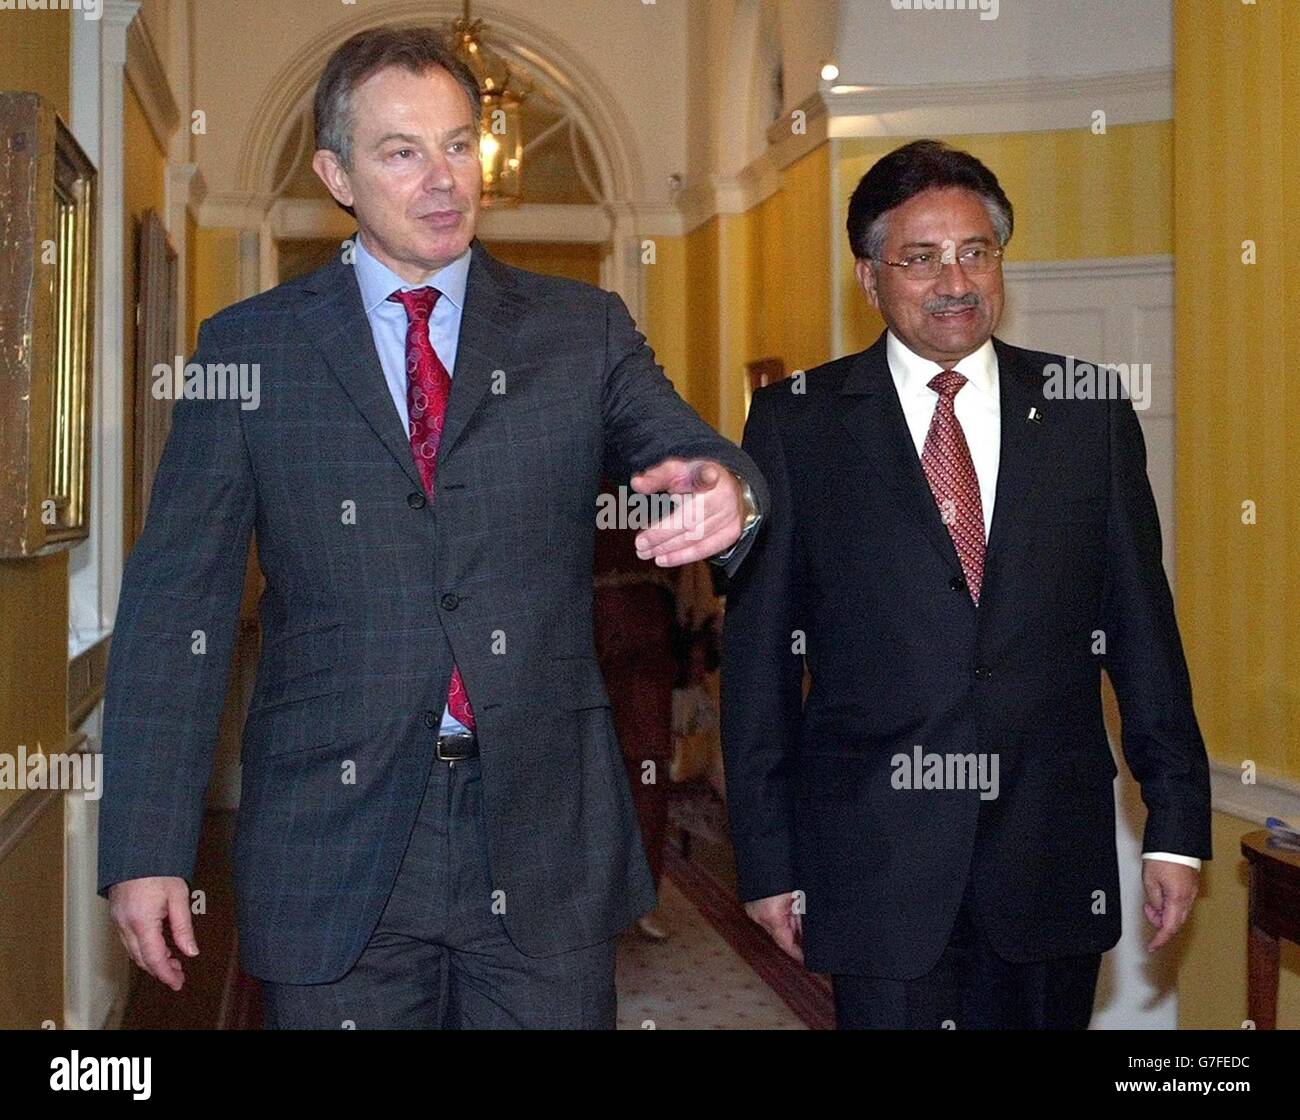 Il primo ministro britannico Tony Blair con il presidente pakistano generale Pervez Musharraf, a 10 Downing Street, centro di Londra. Il presidente pakistano Pervez Musharraf è a Londra per colloqui con il primo ministro britannico Tony Blair sul terrorismo internazionale, il commercio e la situazione nel vicino pakistano, l'Afghanistan, così come il Kashmir, il territorio il Pakistan contesta con l'India. Foto Stock